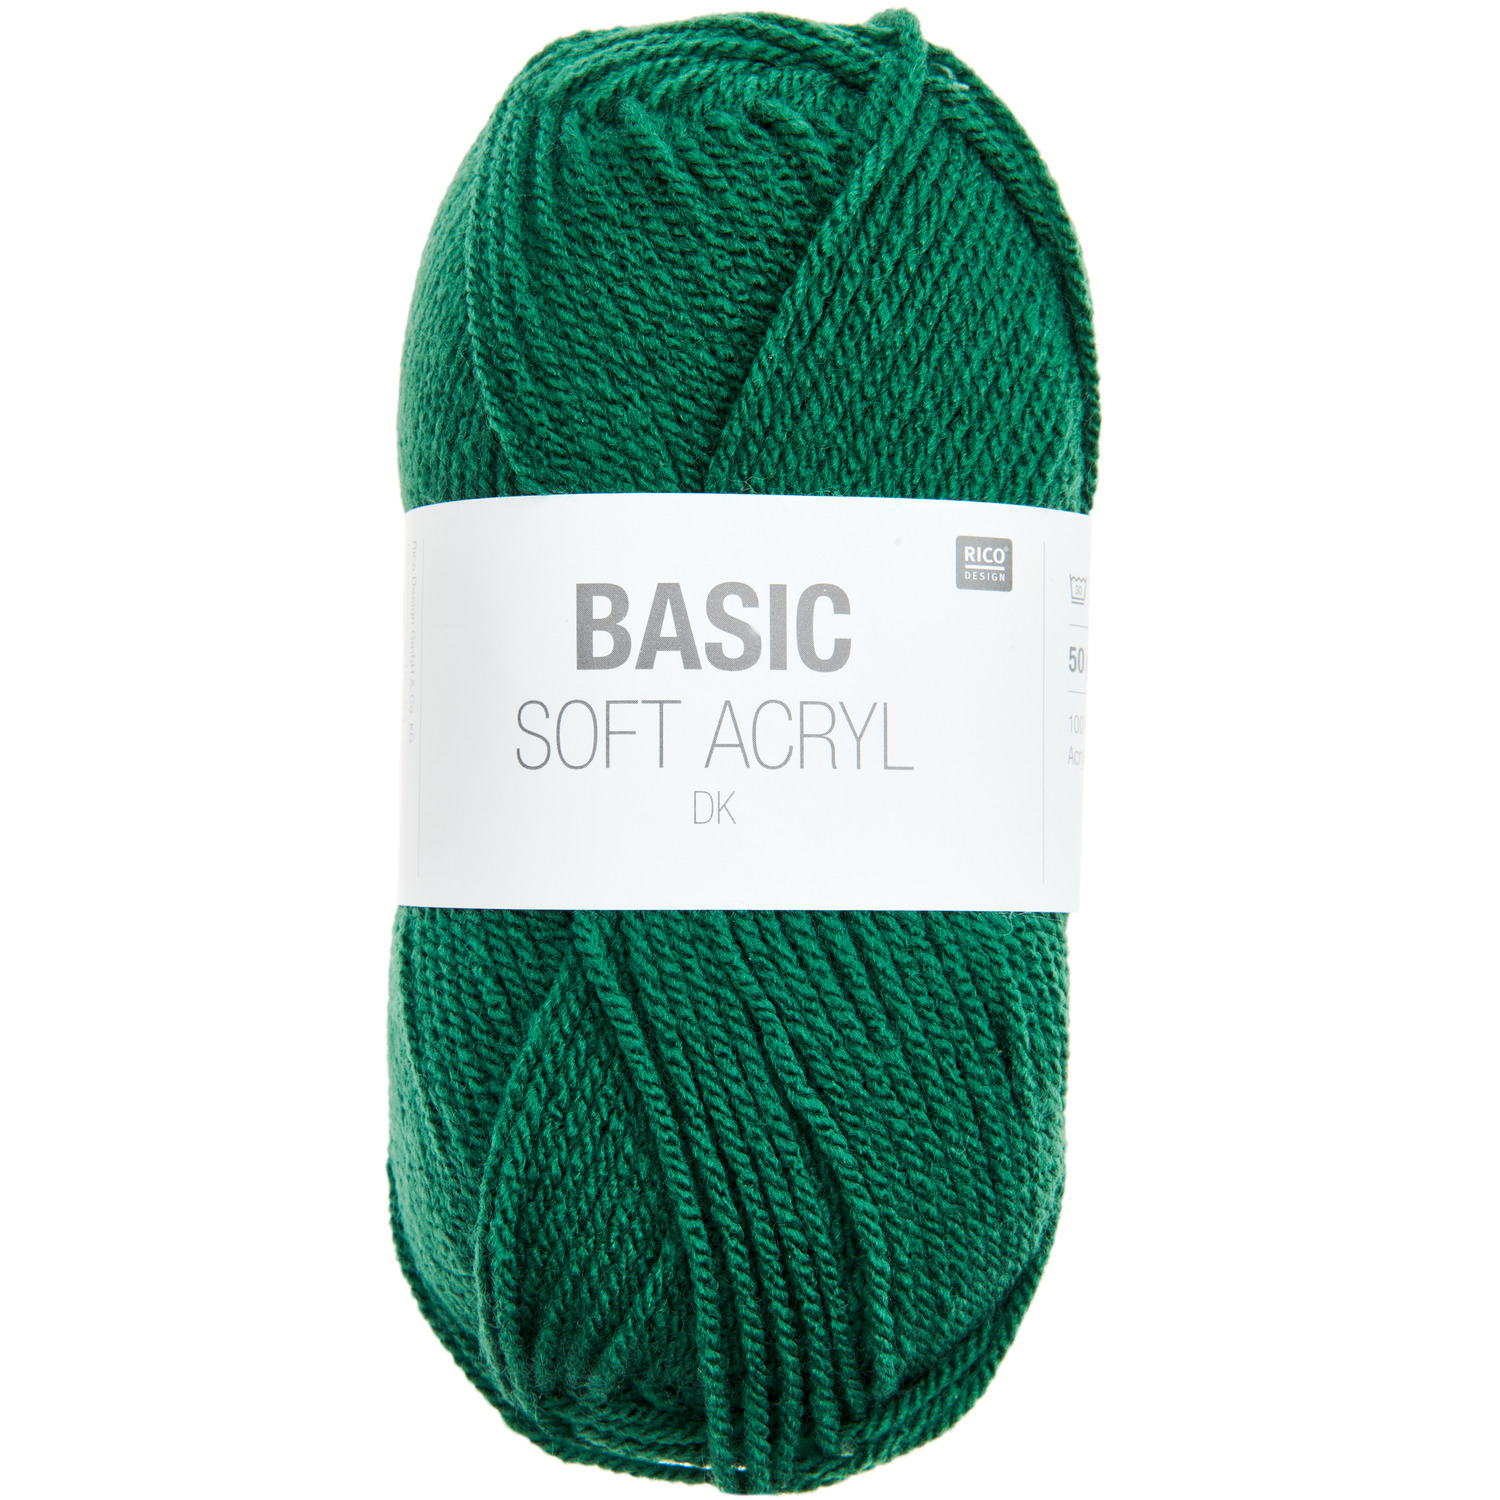 Basic Soft Acryl dk